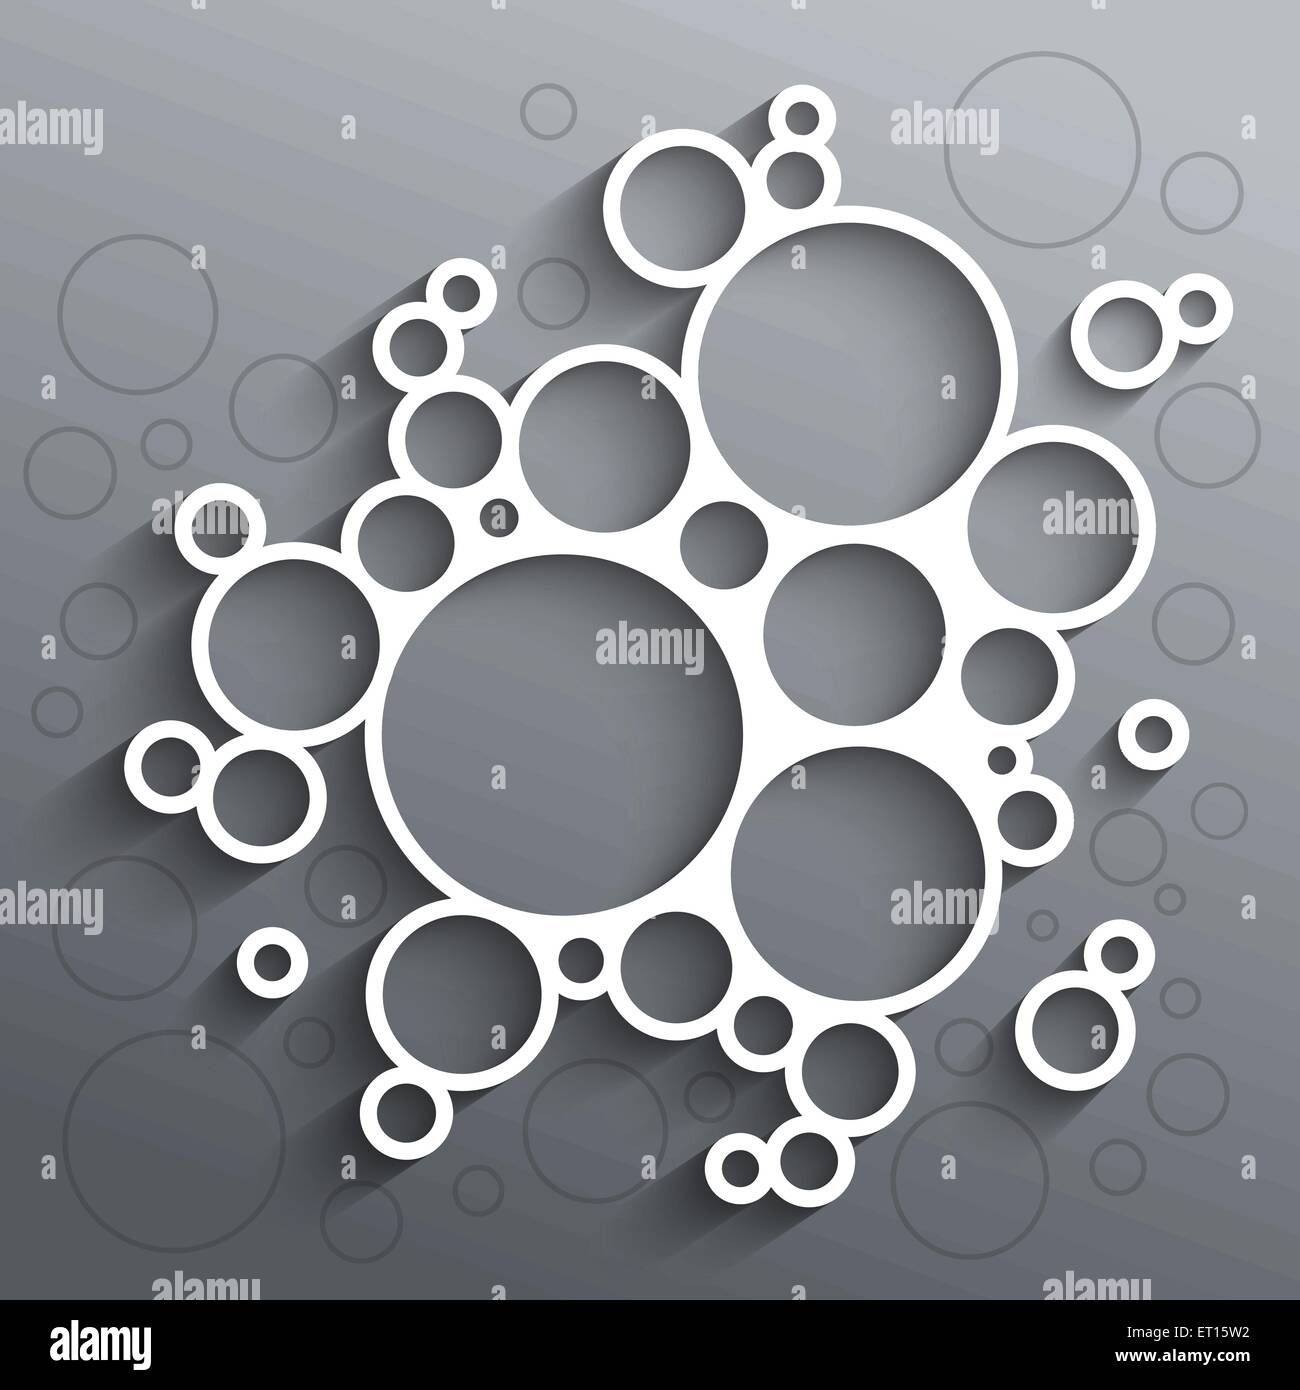 Résumé des infographies cercles blancs avec ombre sur fond gris. Illustration vecteur EPS RVB10 Illustration de Vecteur